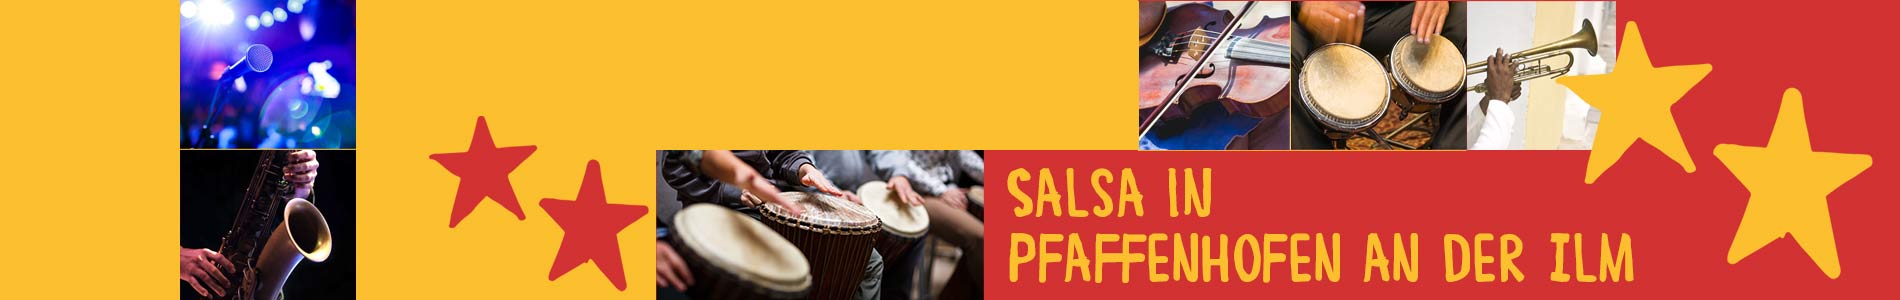 Salsa in Pfaffenhofen an der Ilm – Salsa lernen und tanzen, Tanzkurse, Partys, Veranstaltungen